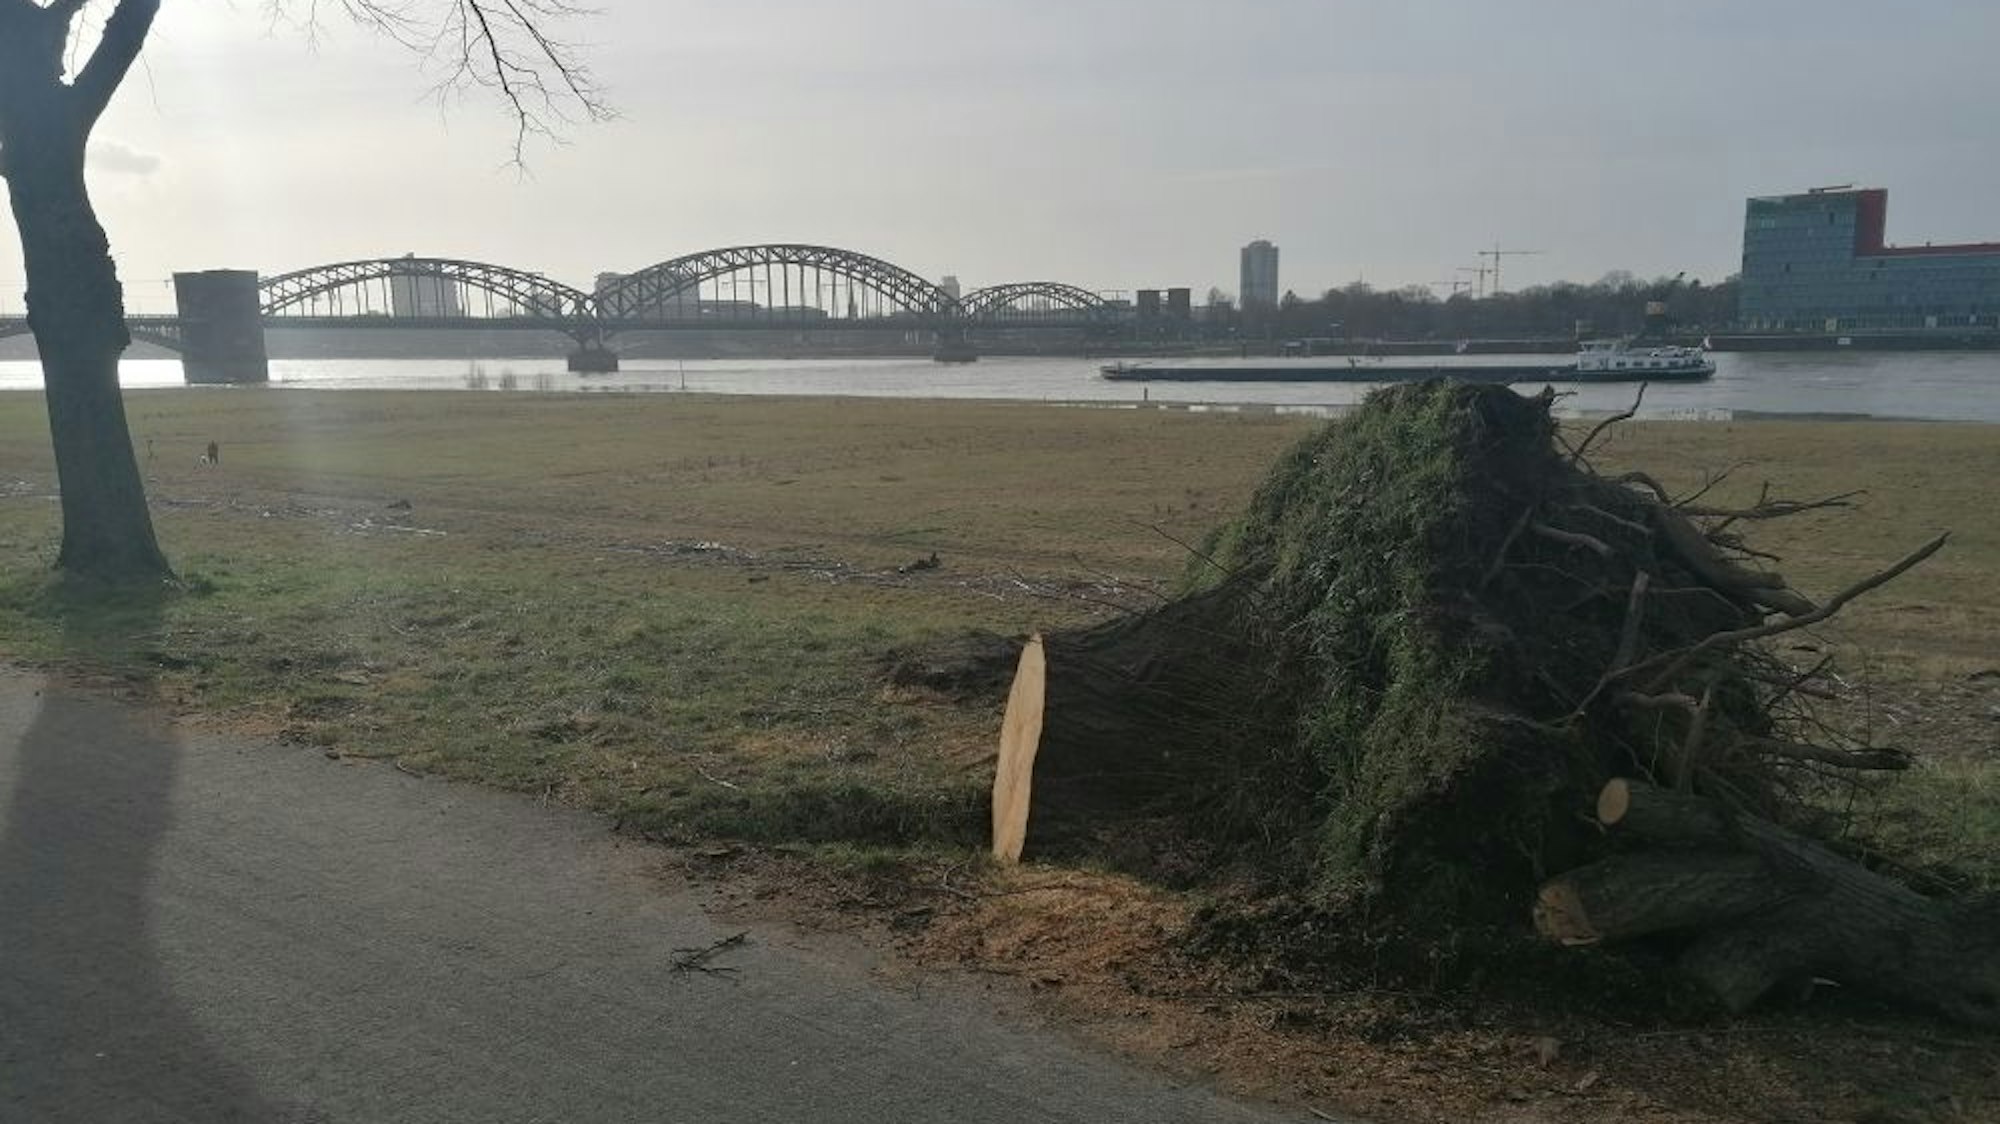 Am Rheinufer liegt ein entwurzelter Baumstumpf.